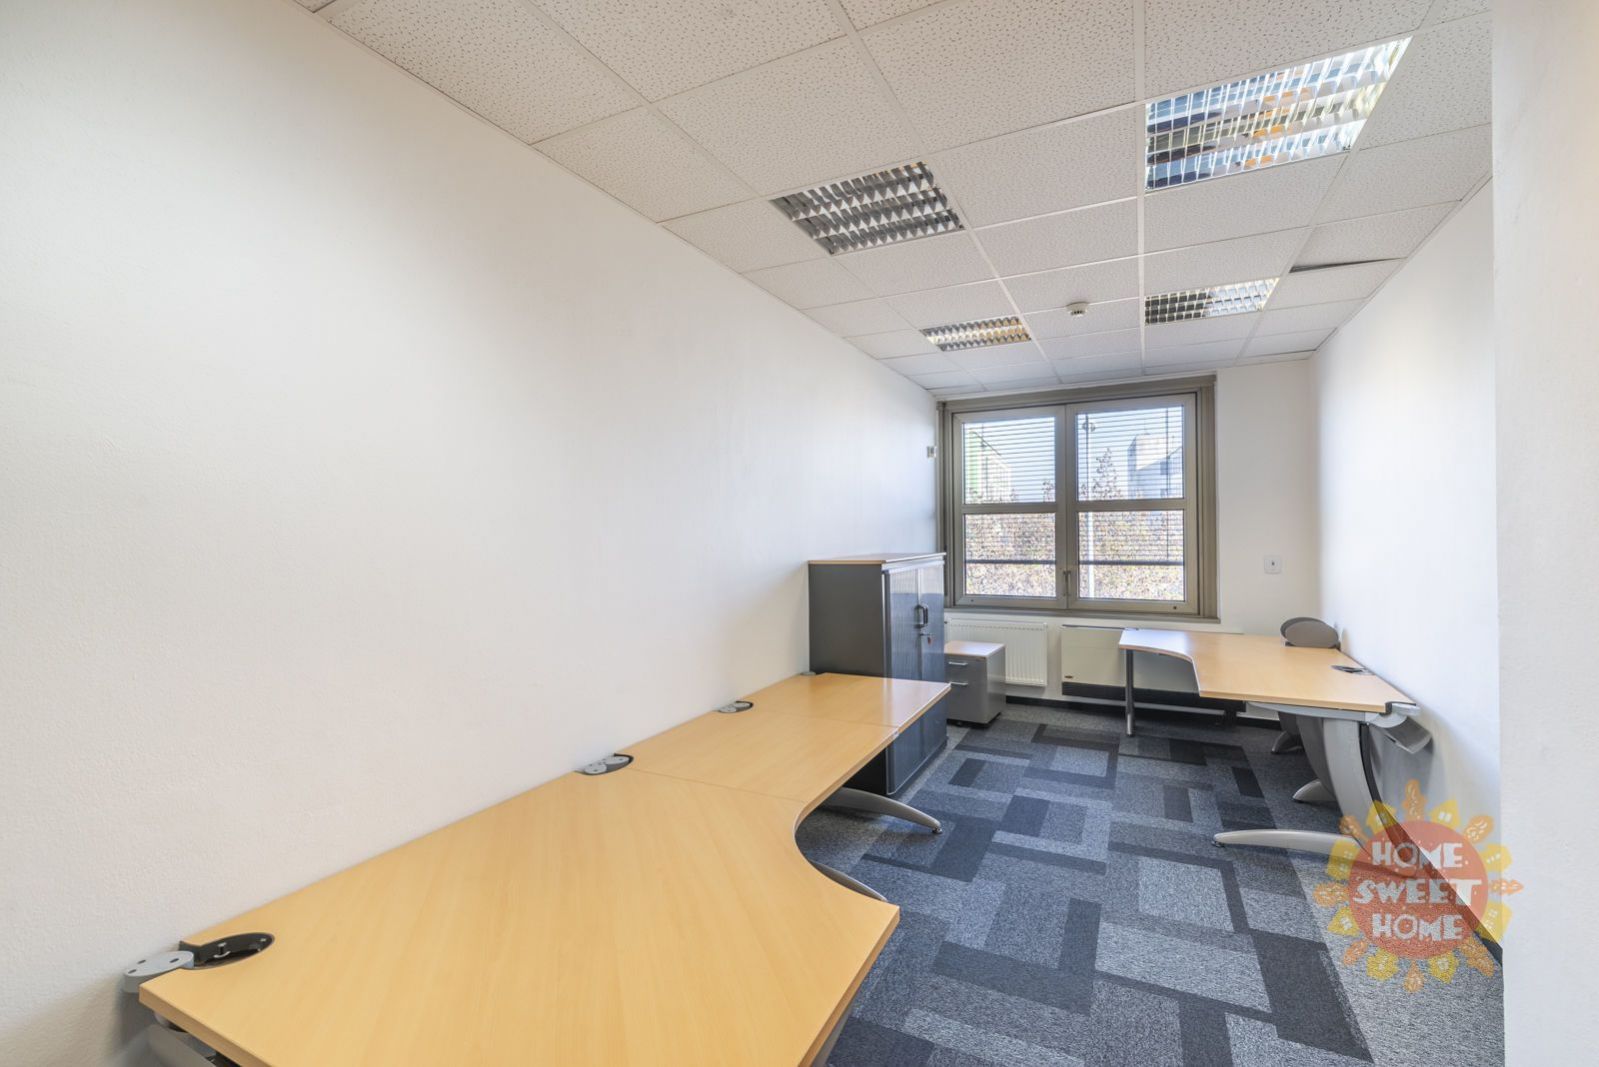 Speciální nabídka, kancelářské prostory k pronájmu (470m2) v areálu Green park, BEZ PROVIZE., obrázek č. 3